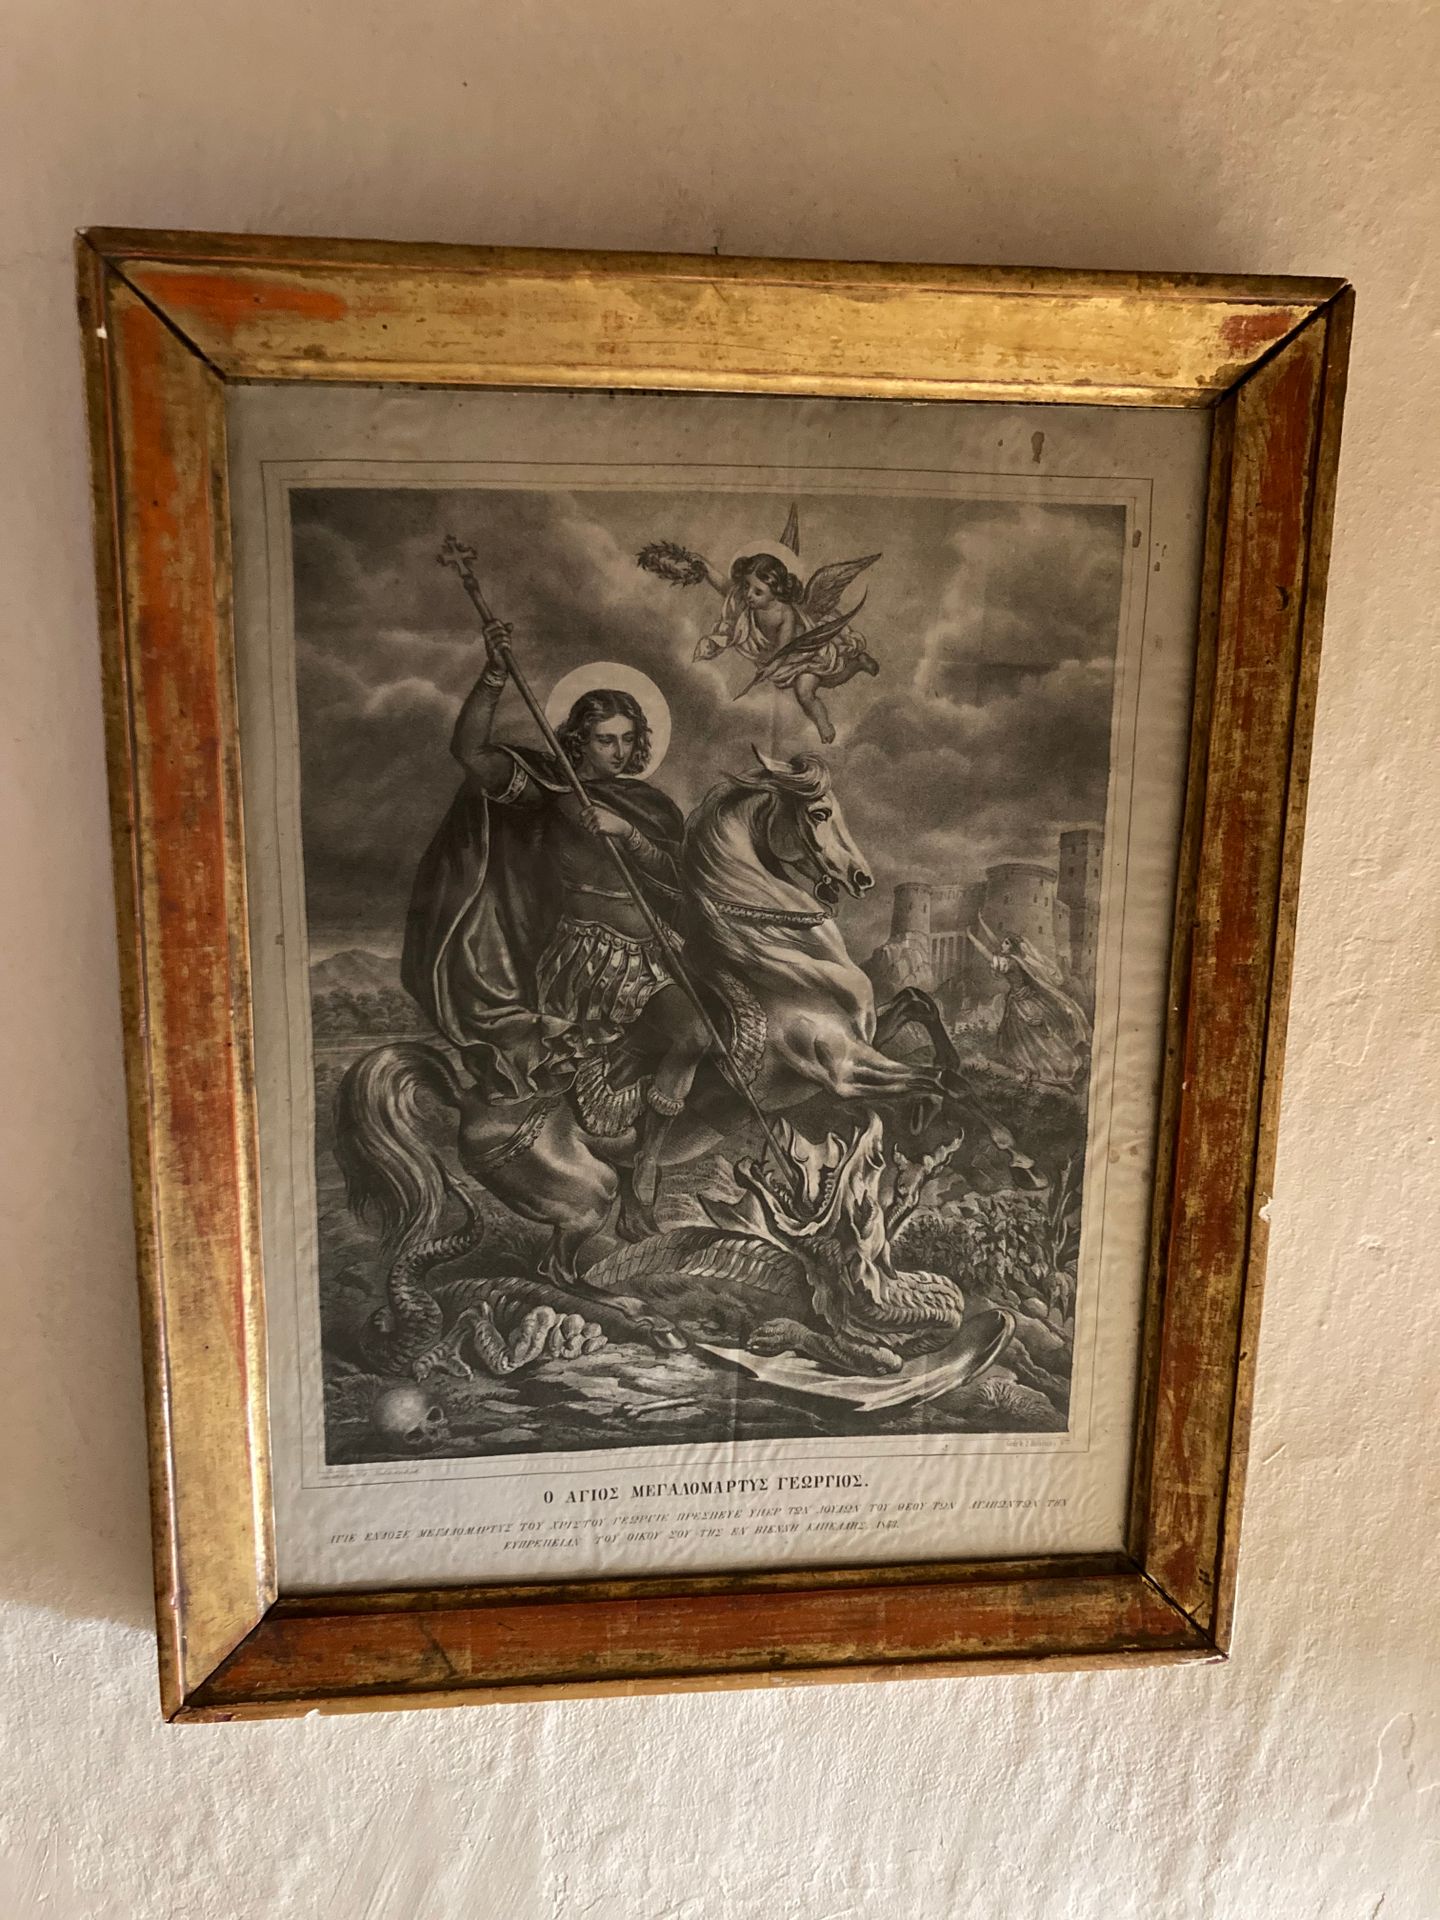 Null Scuola russa. XIX secolo
San Michele che uccide il drago
Incisione
43x33 cm